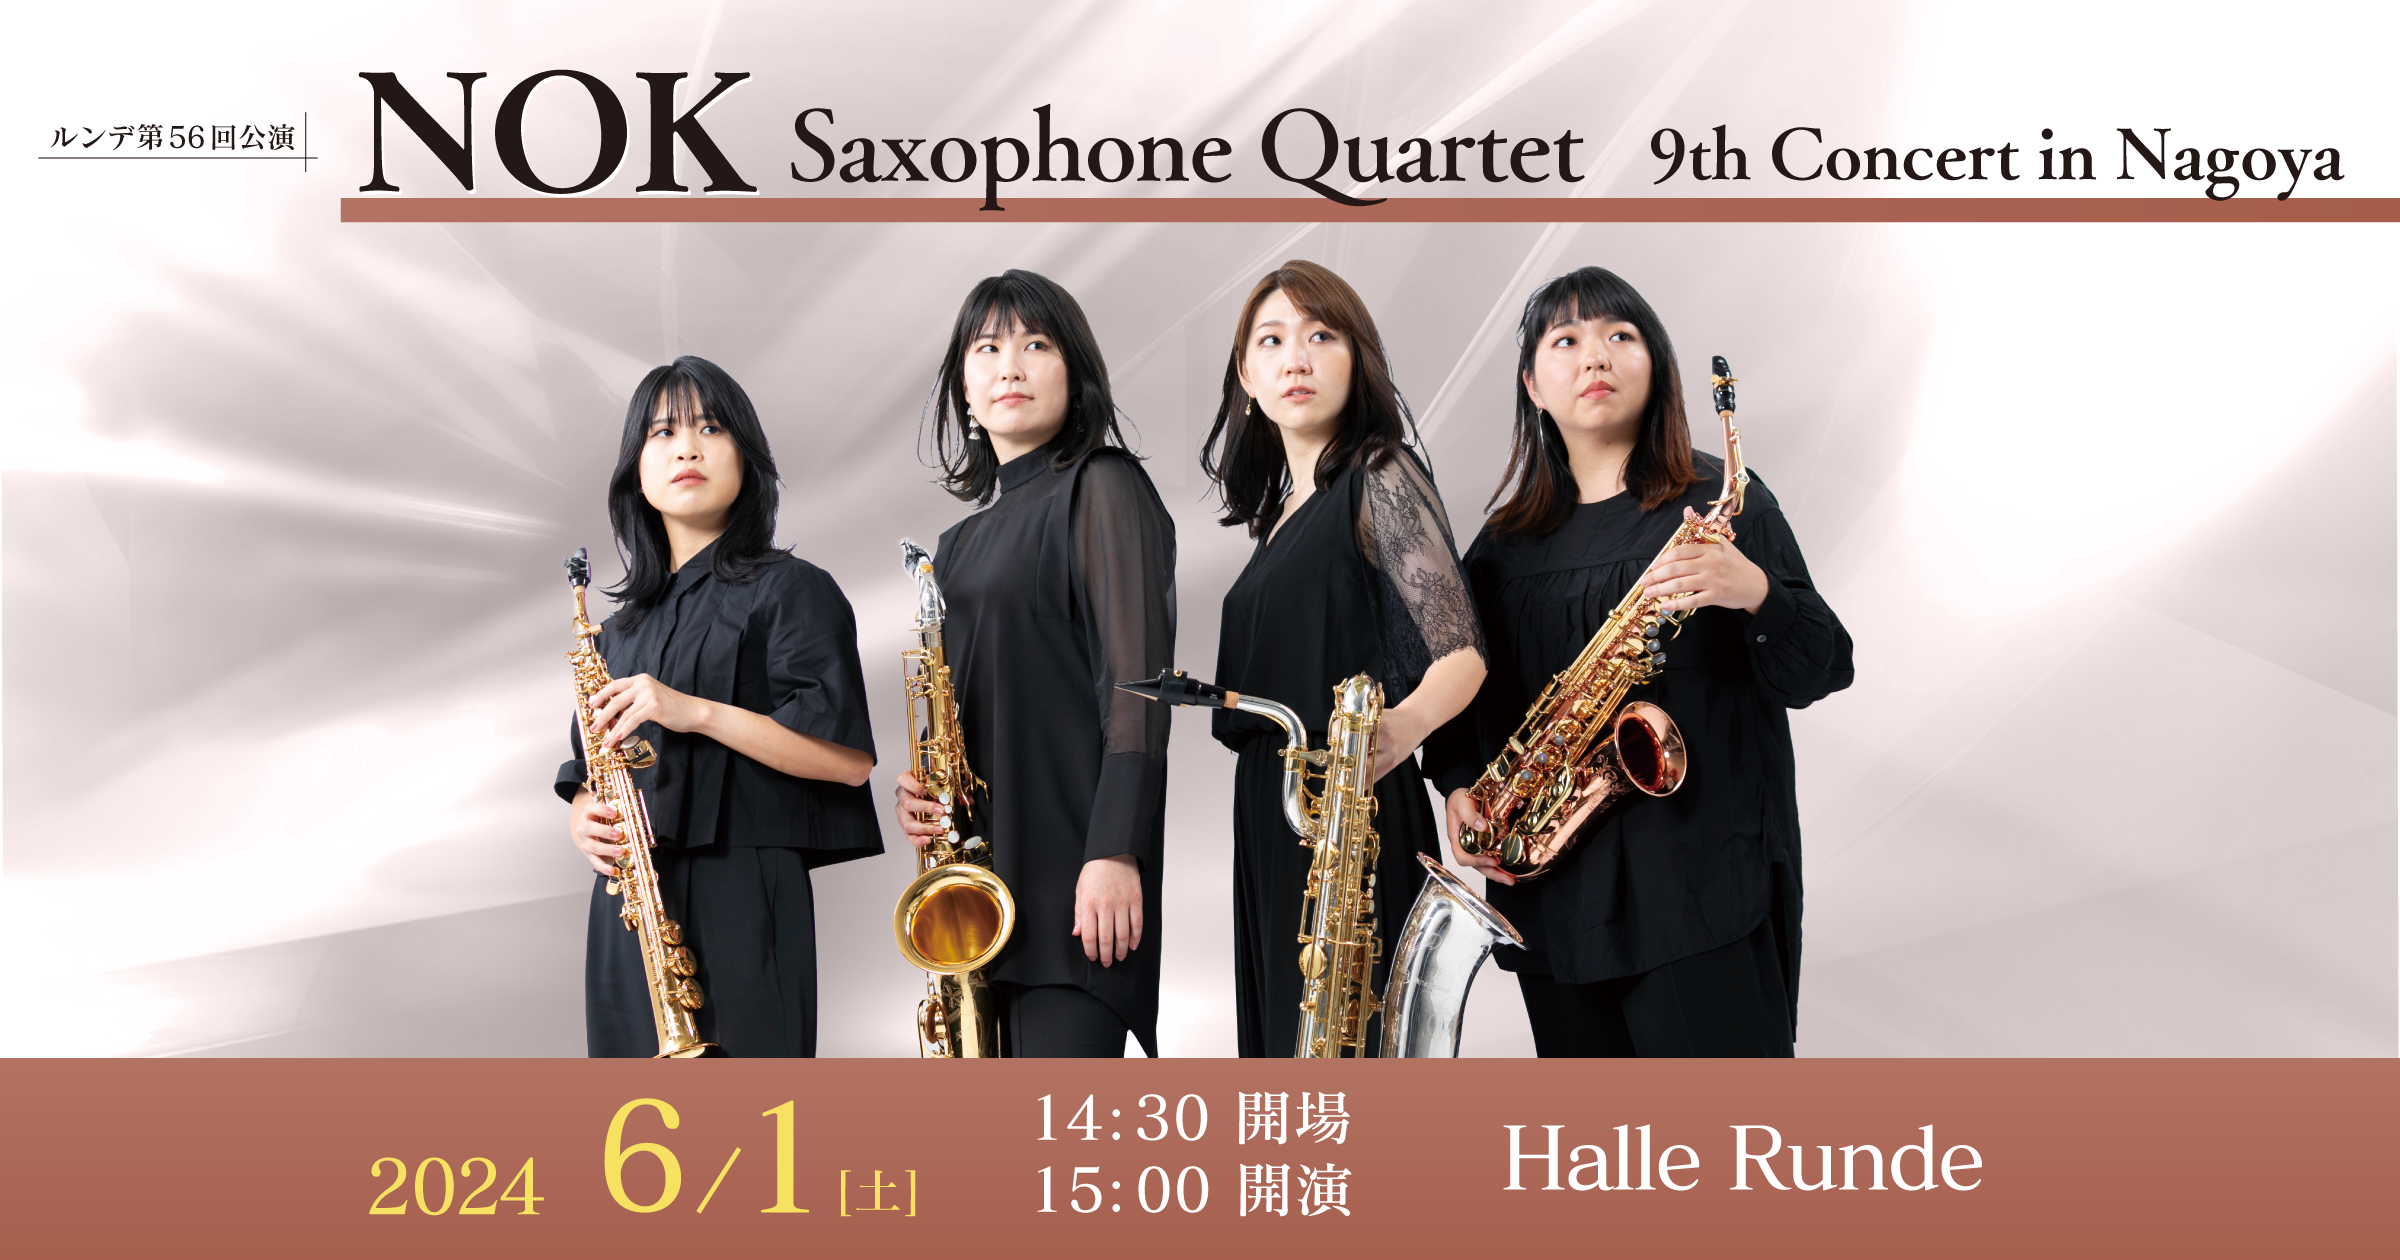 【ルンデ第56回公演】 NOK Saxophone Quartet 9th Concert in Nagoya 2024年6月1日 土曜日（Halle Runde） 開場：14時30分 ・開演：15時00分 